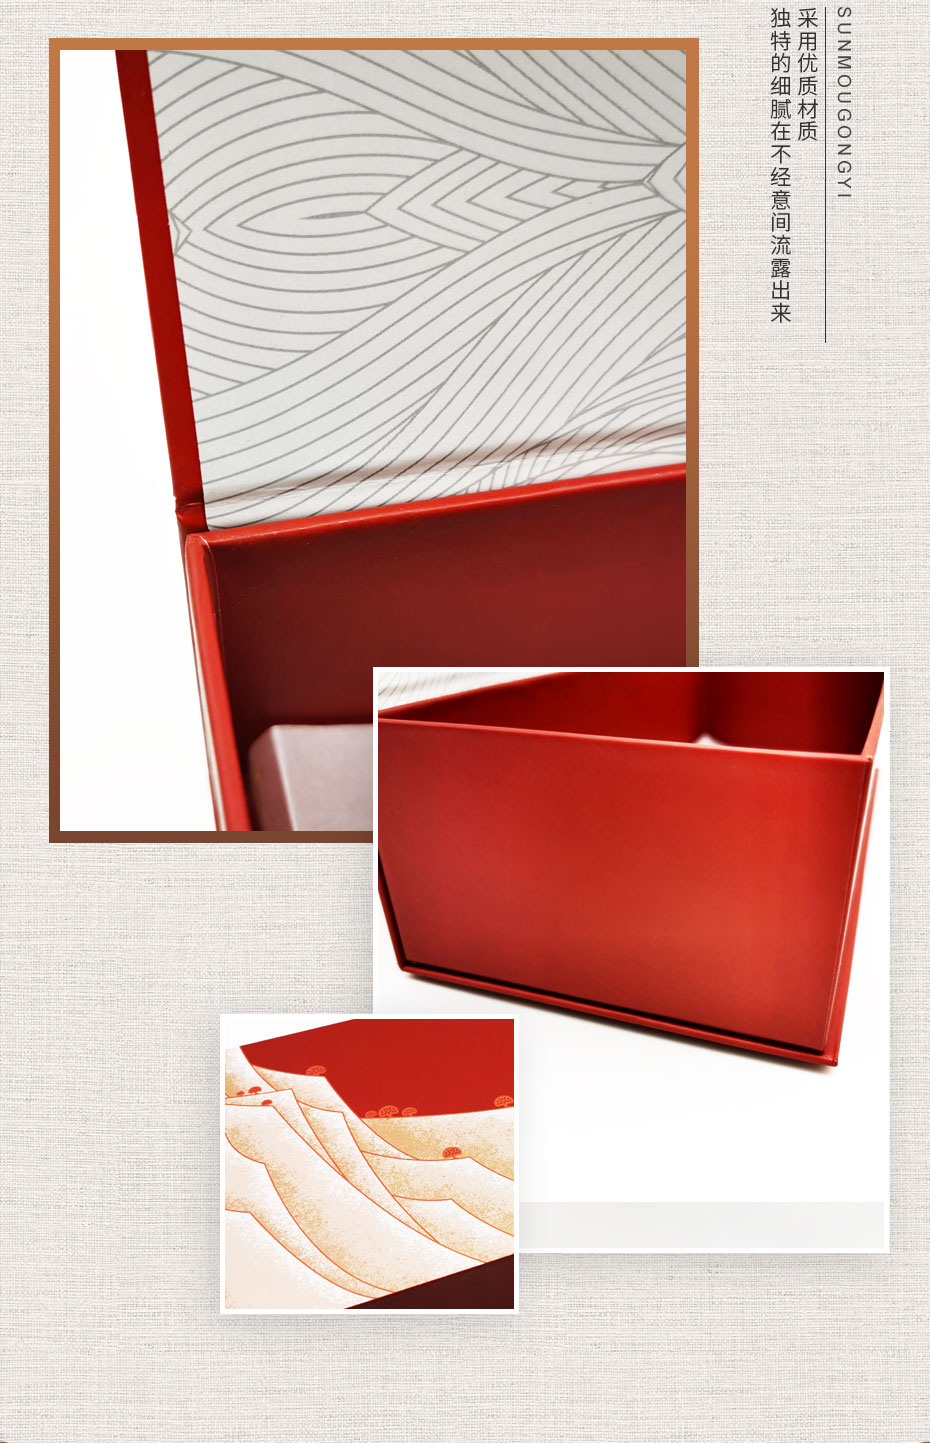 礼品盒产品模板_03.jpg